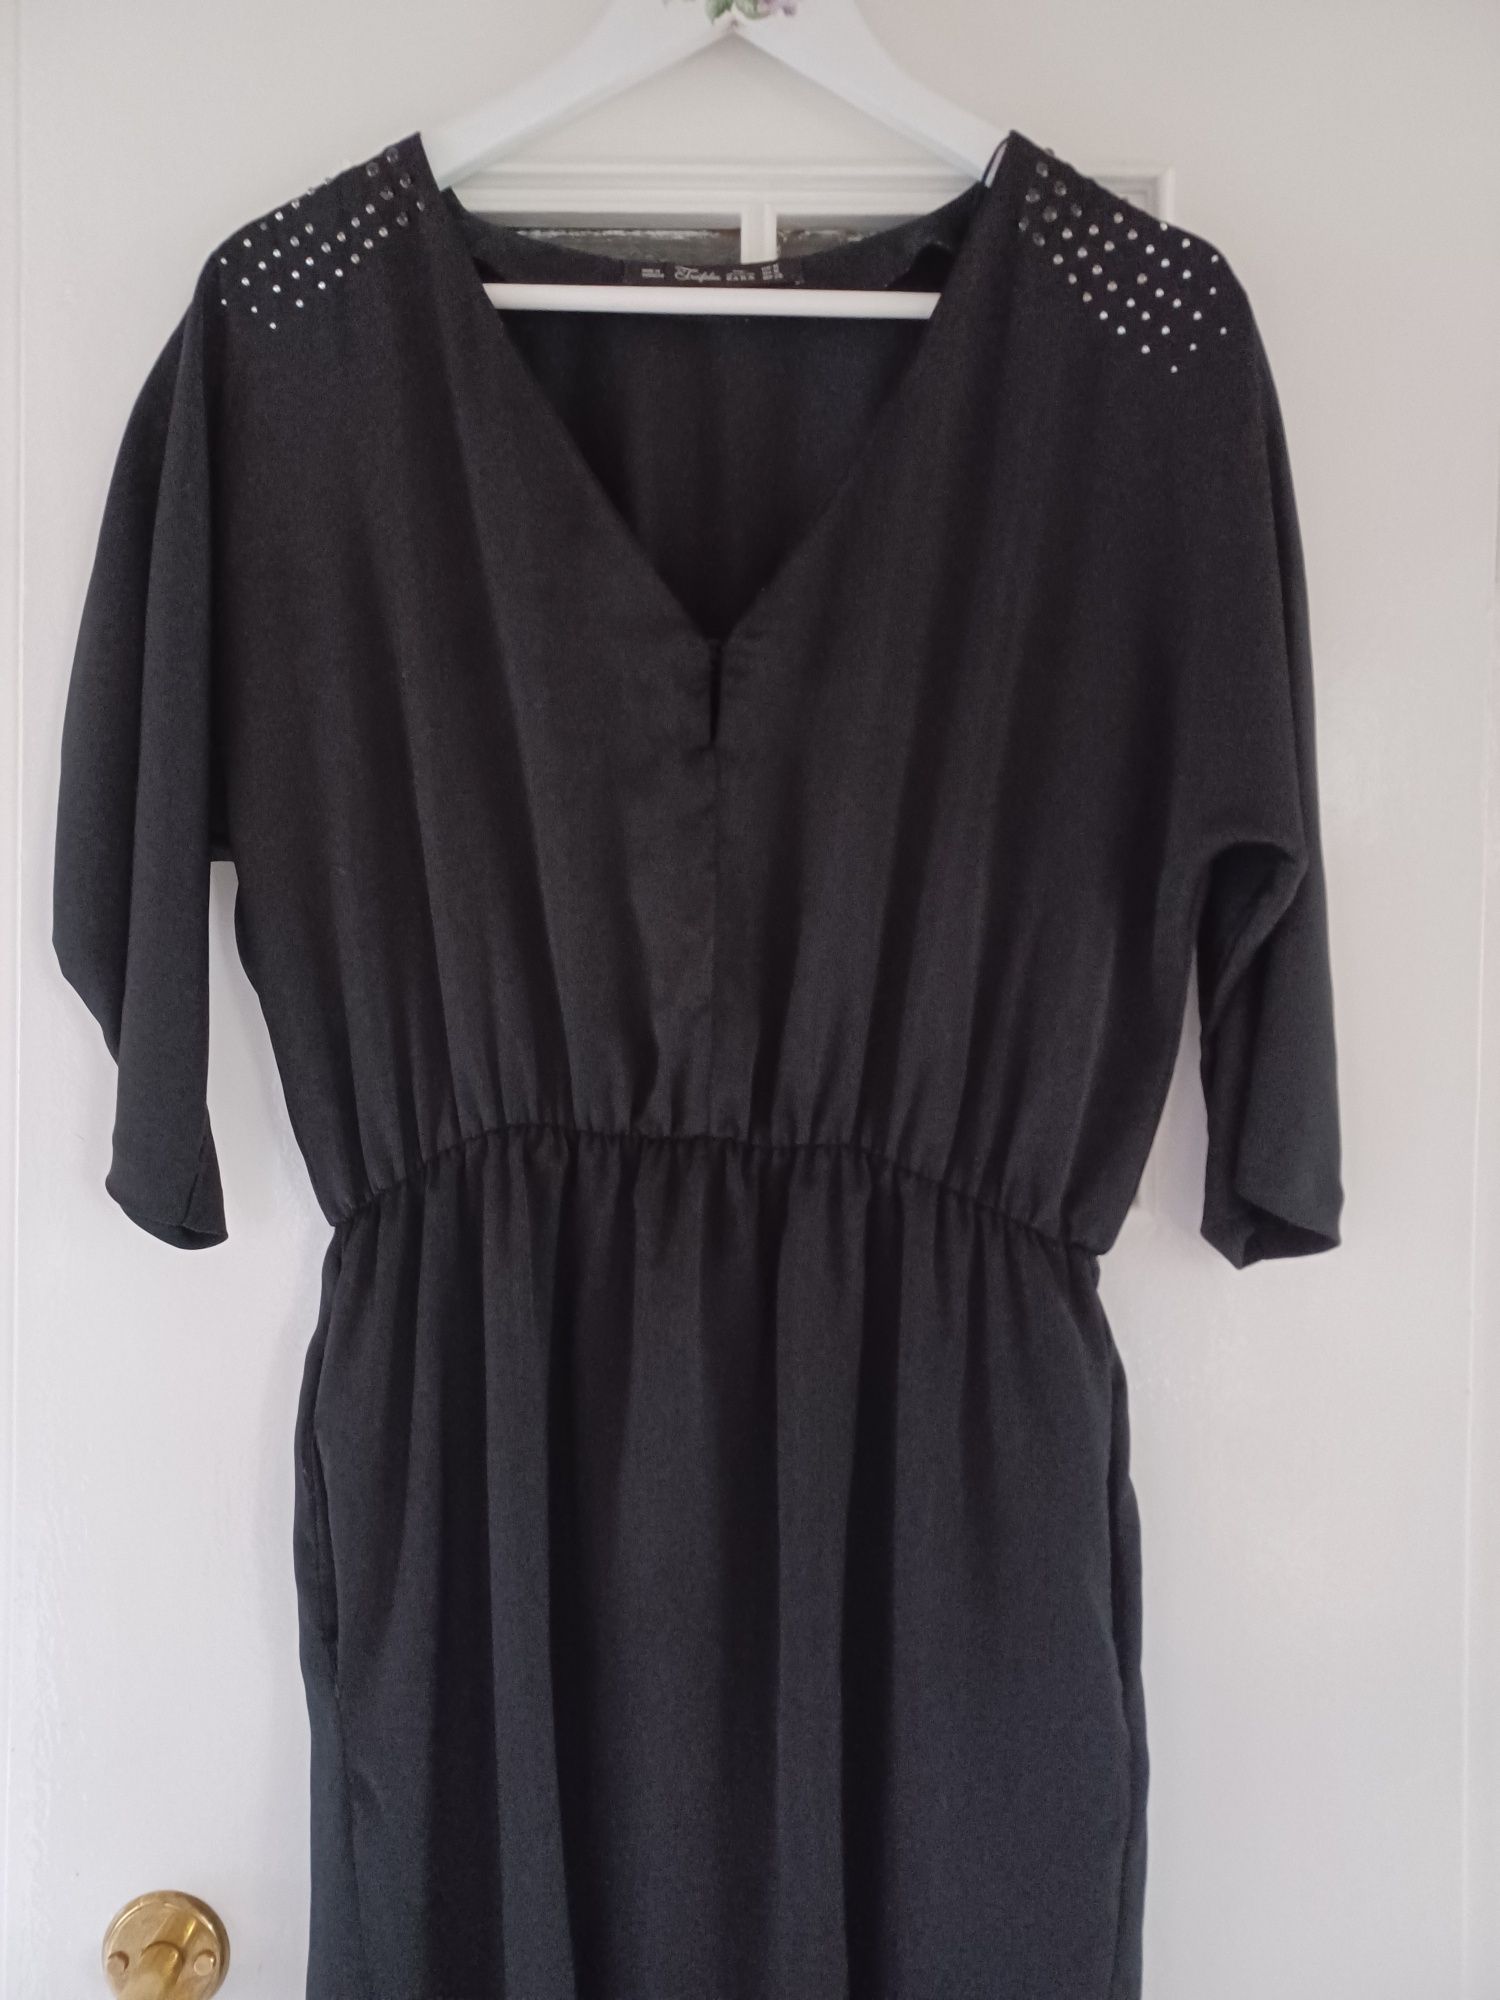 Krótka, czarna sukienka firmy Zara